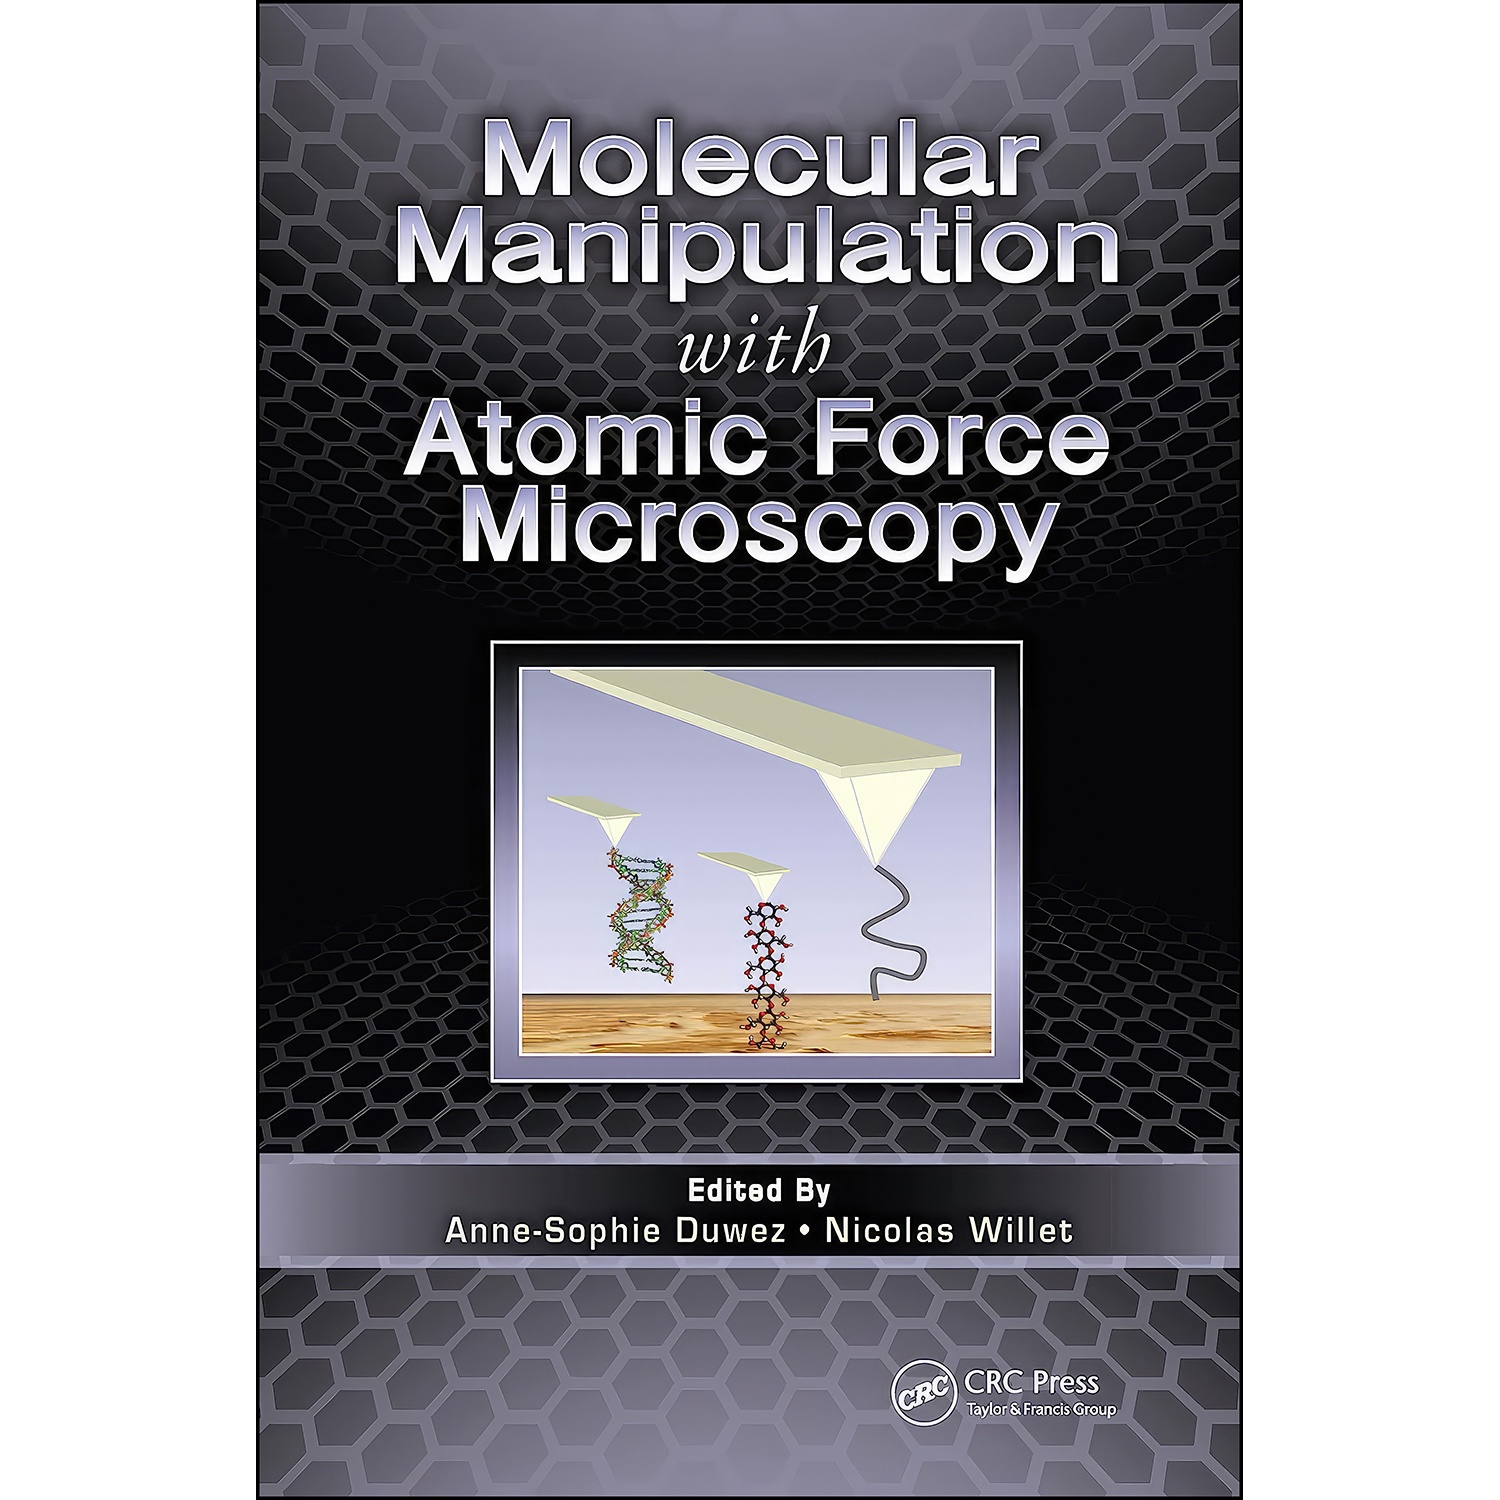 کتاب Molecular Manipulation with Atomic Force Microscopy اثر جمعي از نويسندگان انتشارات CRC Press